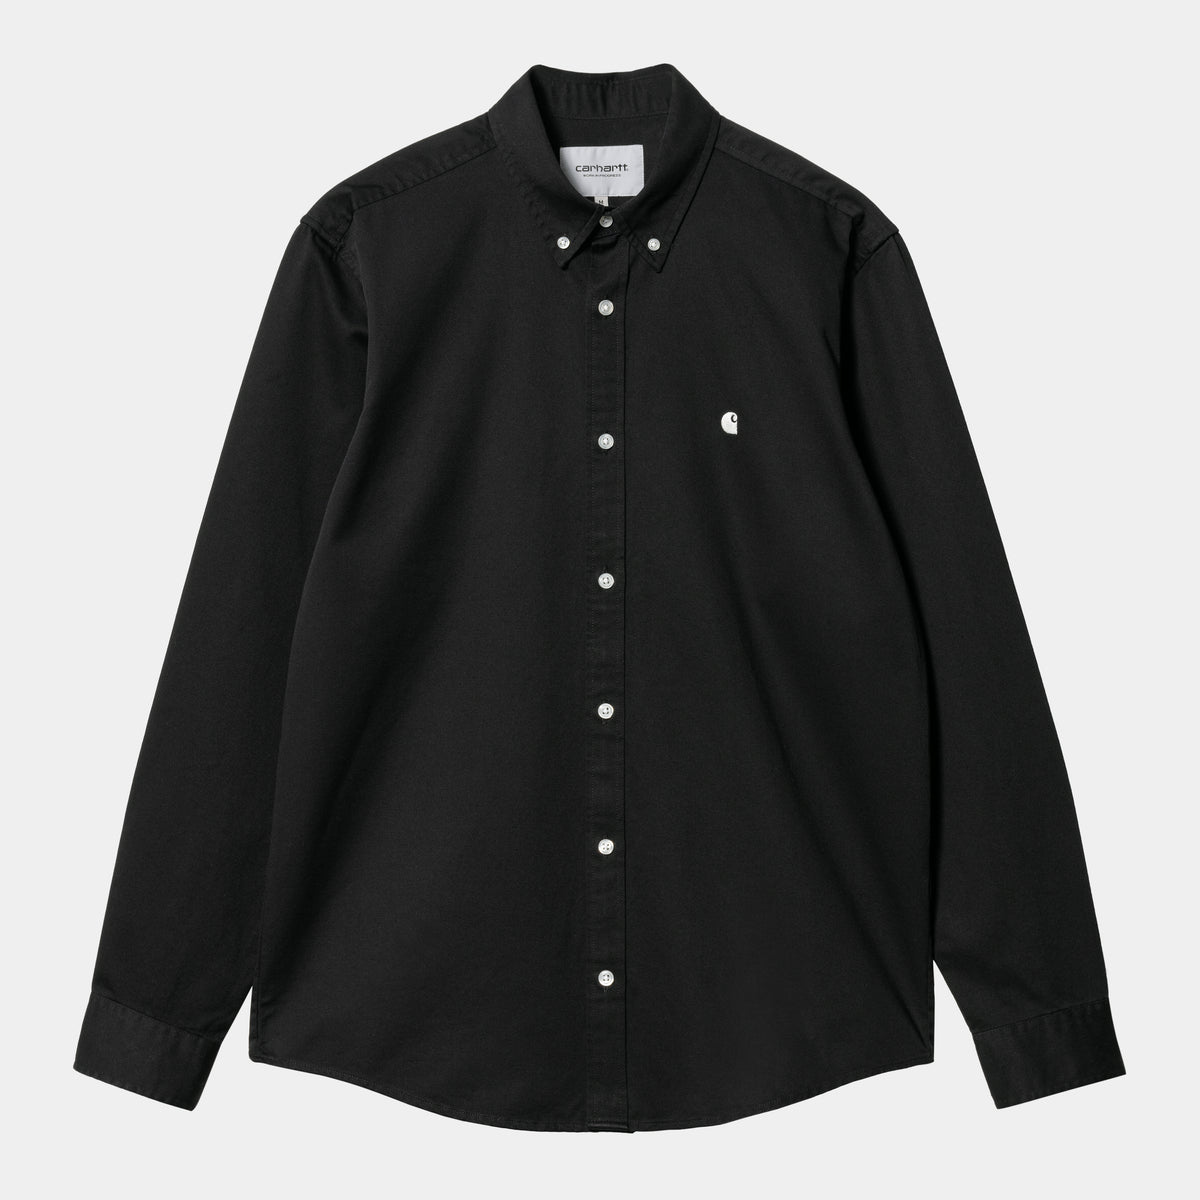 Carhartt L/S Madison Shirt - Black/Wax